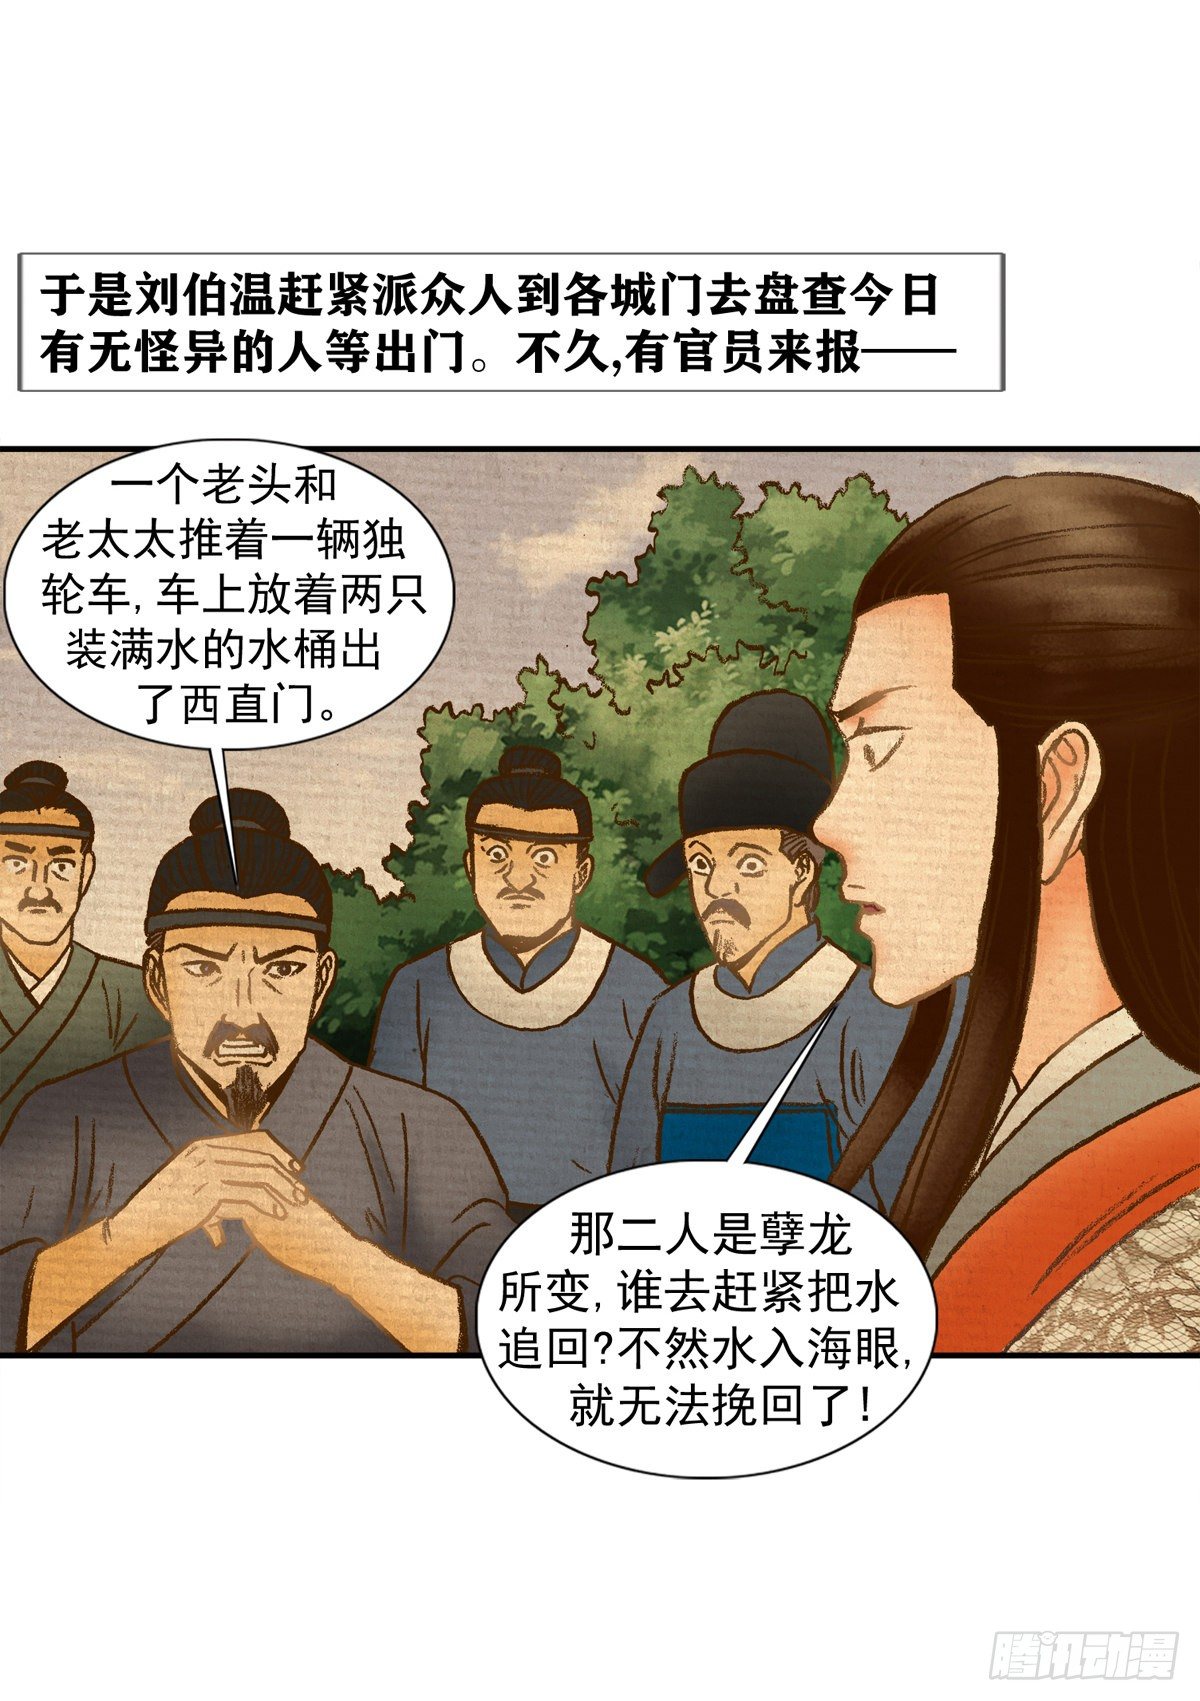 經典傳承—中國好故事 - 老北京的傳說 5 - 1